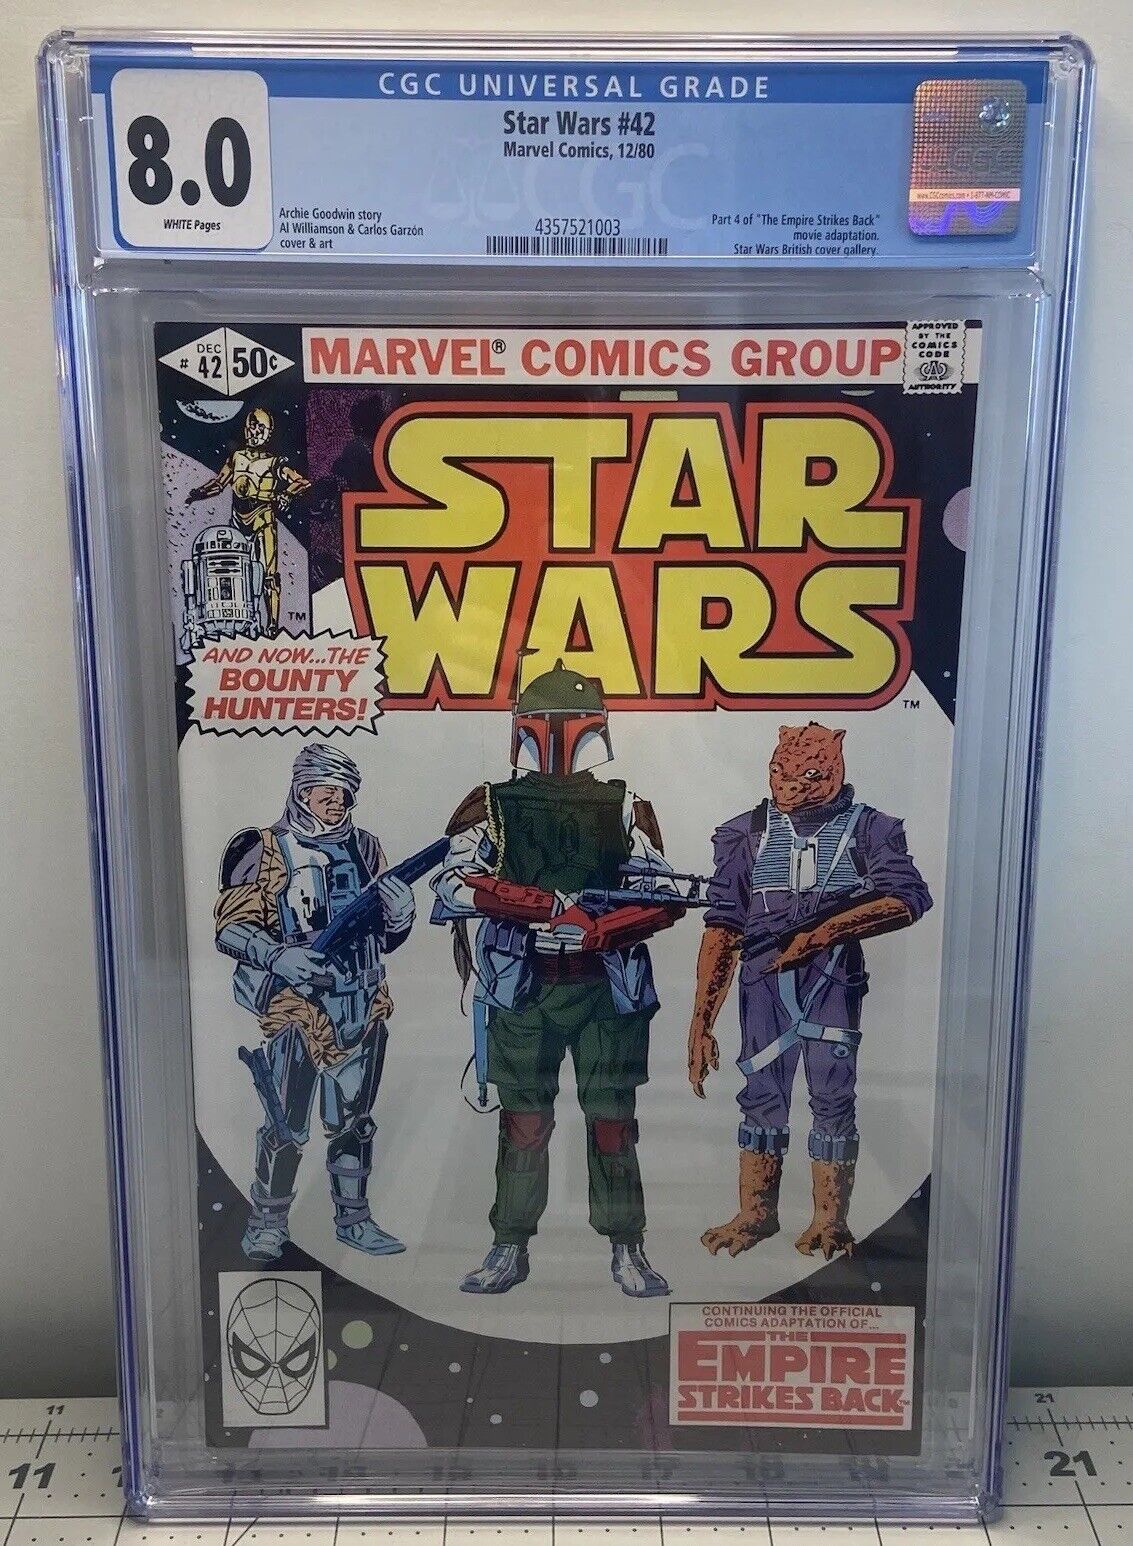 Star Wars #42 MCU 1980 VTG CGC 8.0 VF 1st Full Cover Appearance of Boba Fett Key